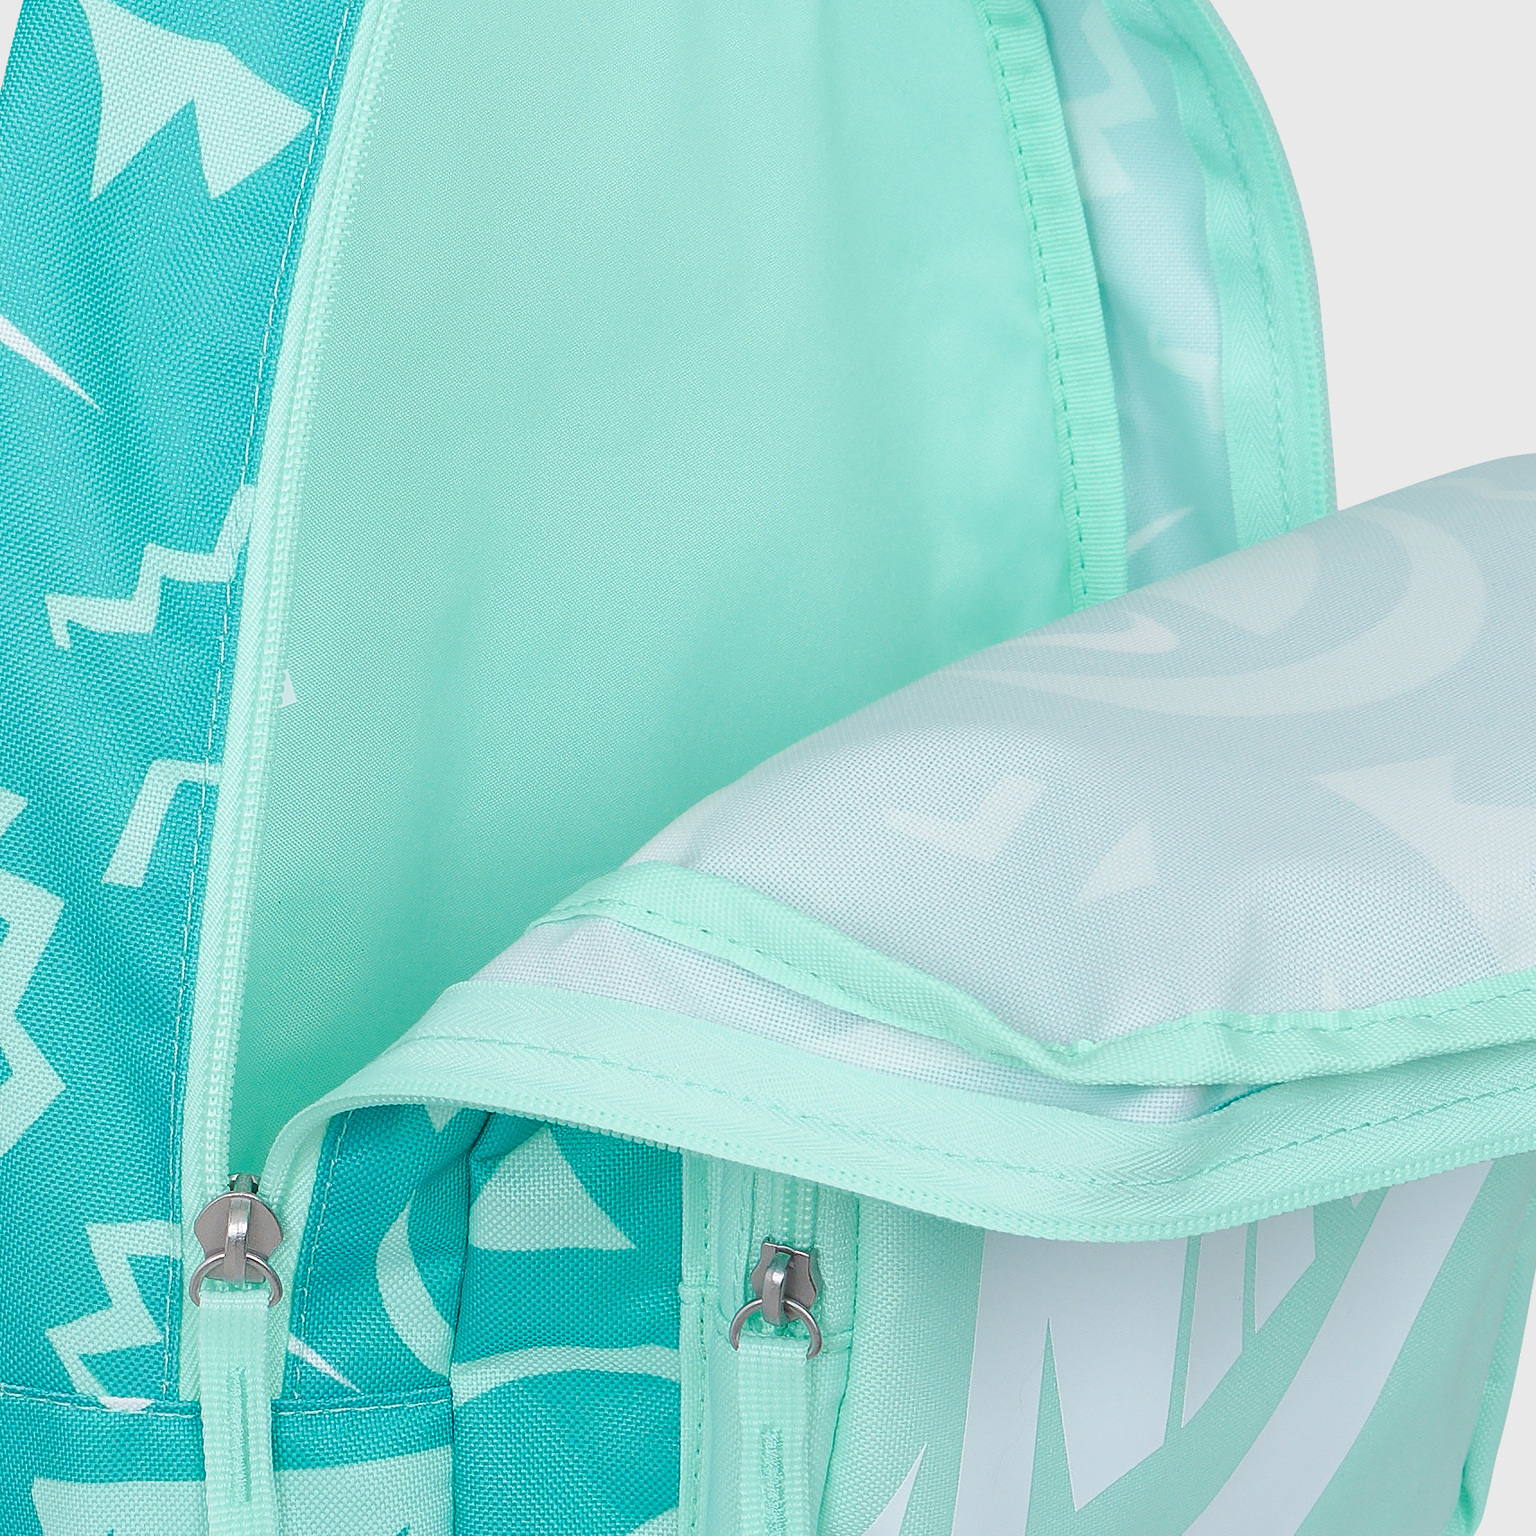 Рюкзак детский Nike Classic Backpack DM1886-379